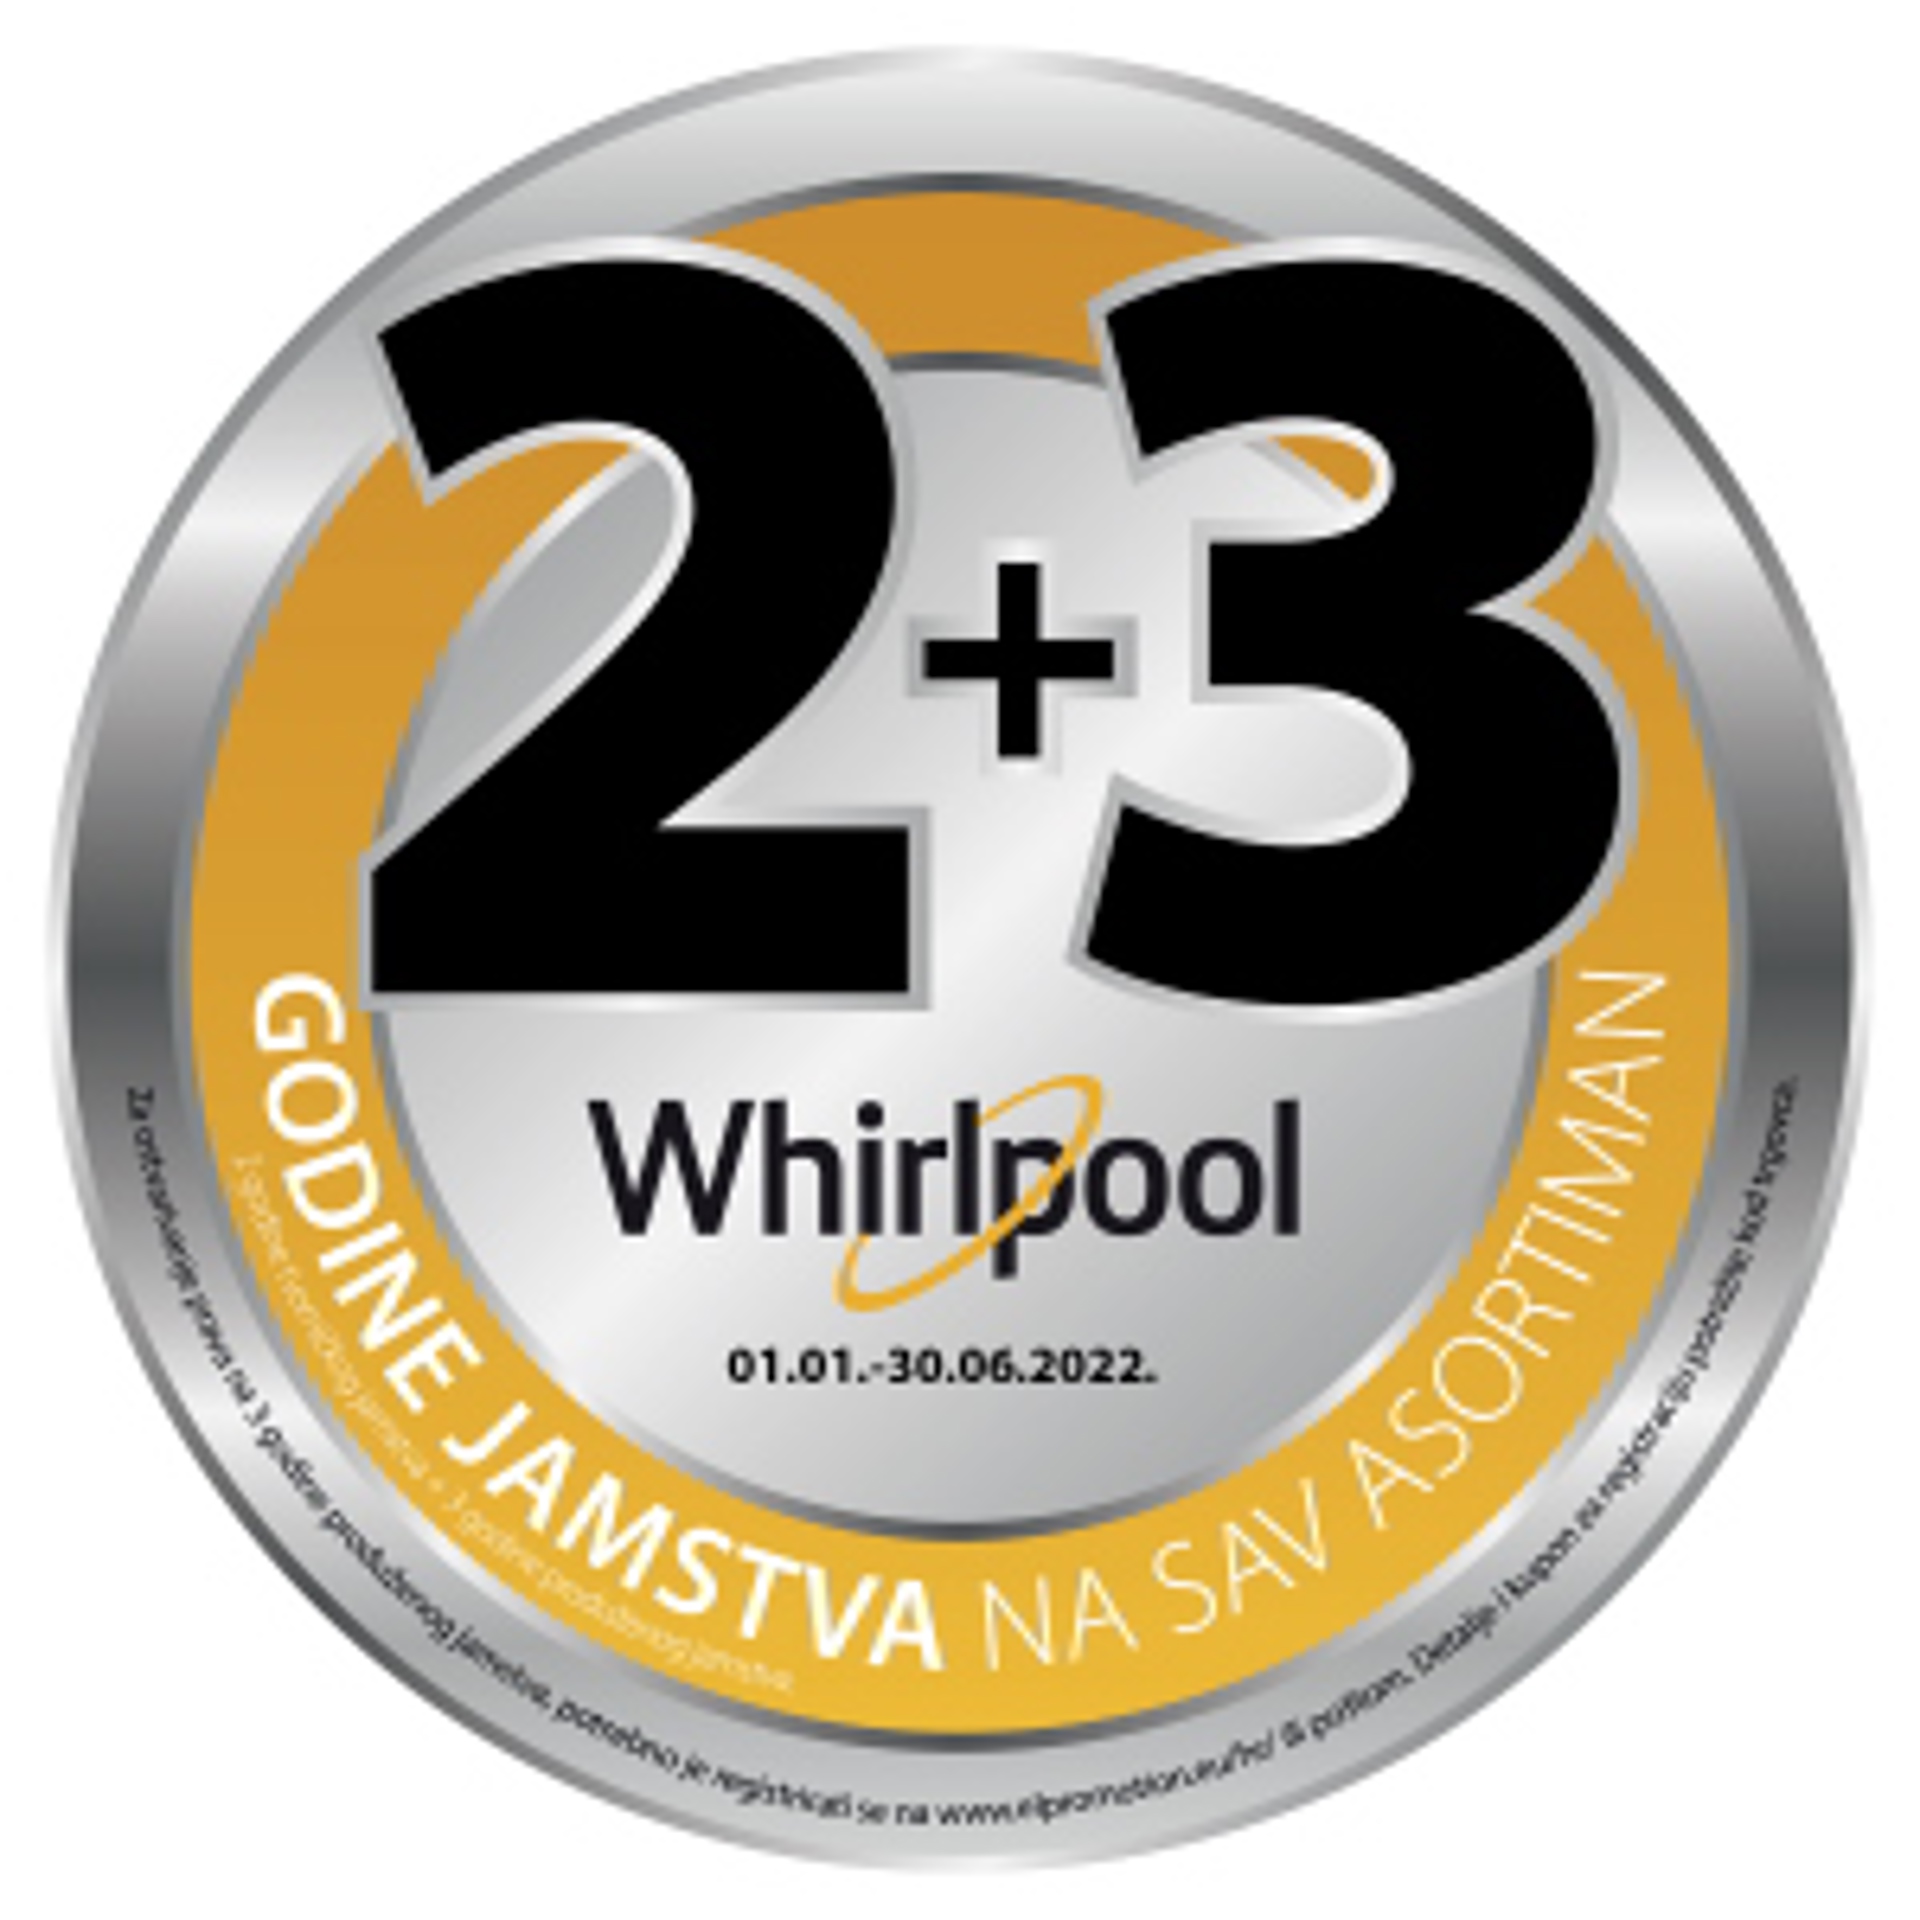 Whirlpool promocija 2 godine tvorničkog + 3 godine produženog jamstva 